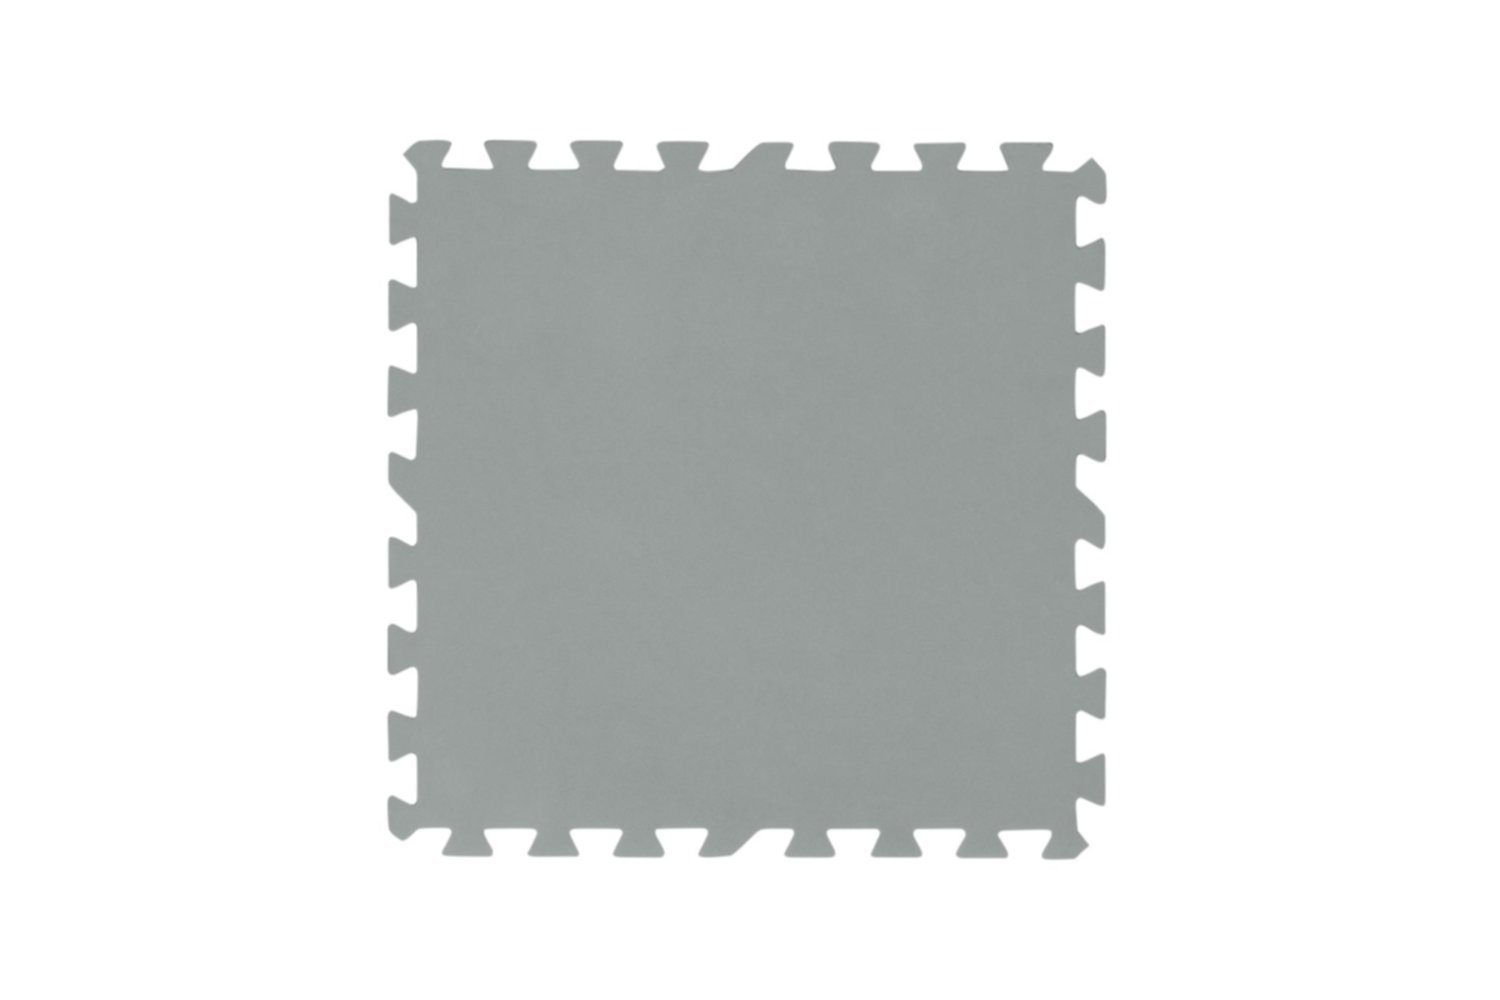 Tapis de sol gris pour Piscine, 9 pièces, 50 x 50 cm, 2,25m² de surface couverte 